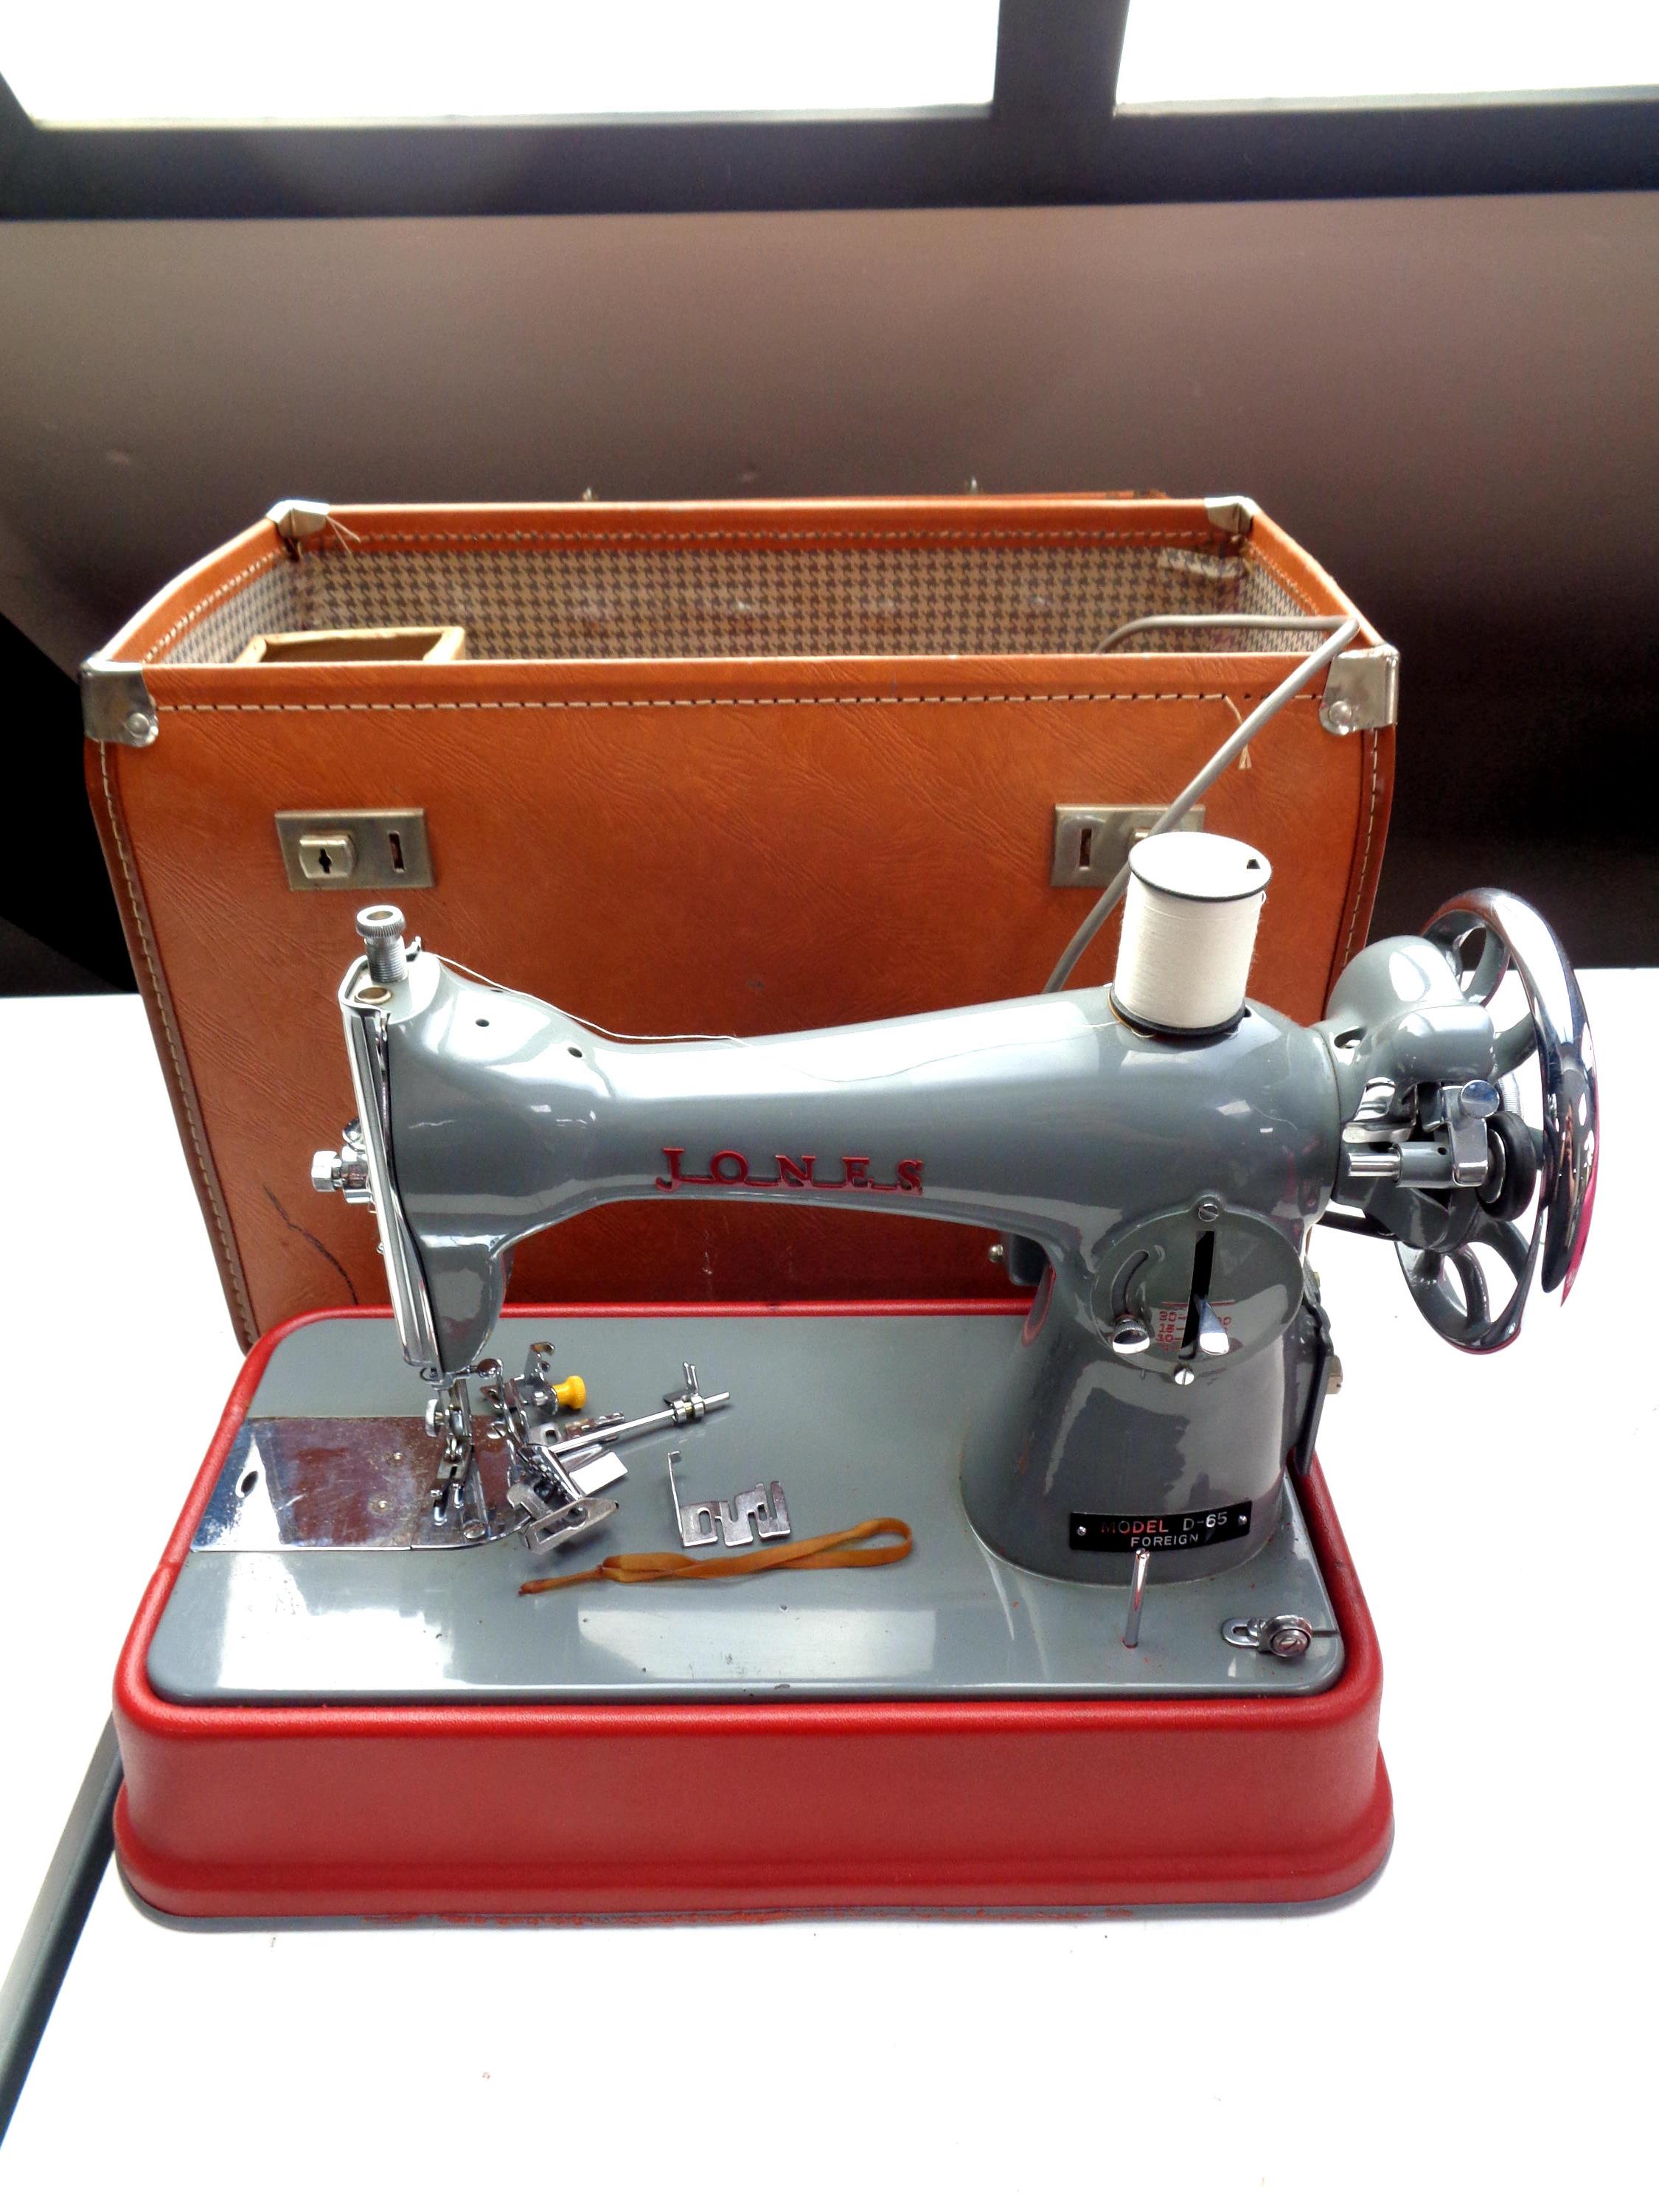 A Jones model D-65 sewing machine in case